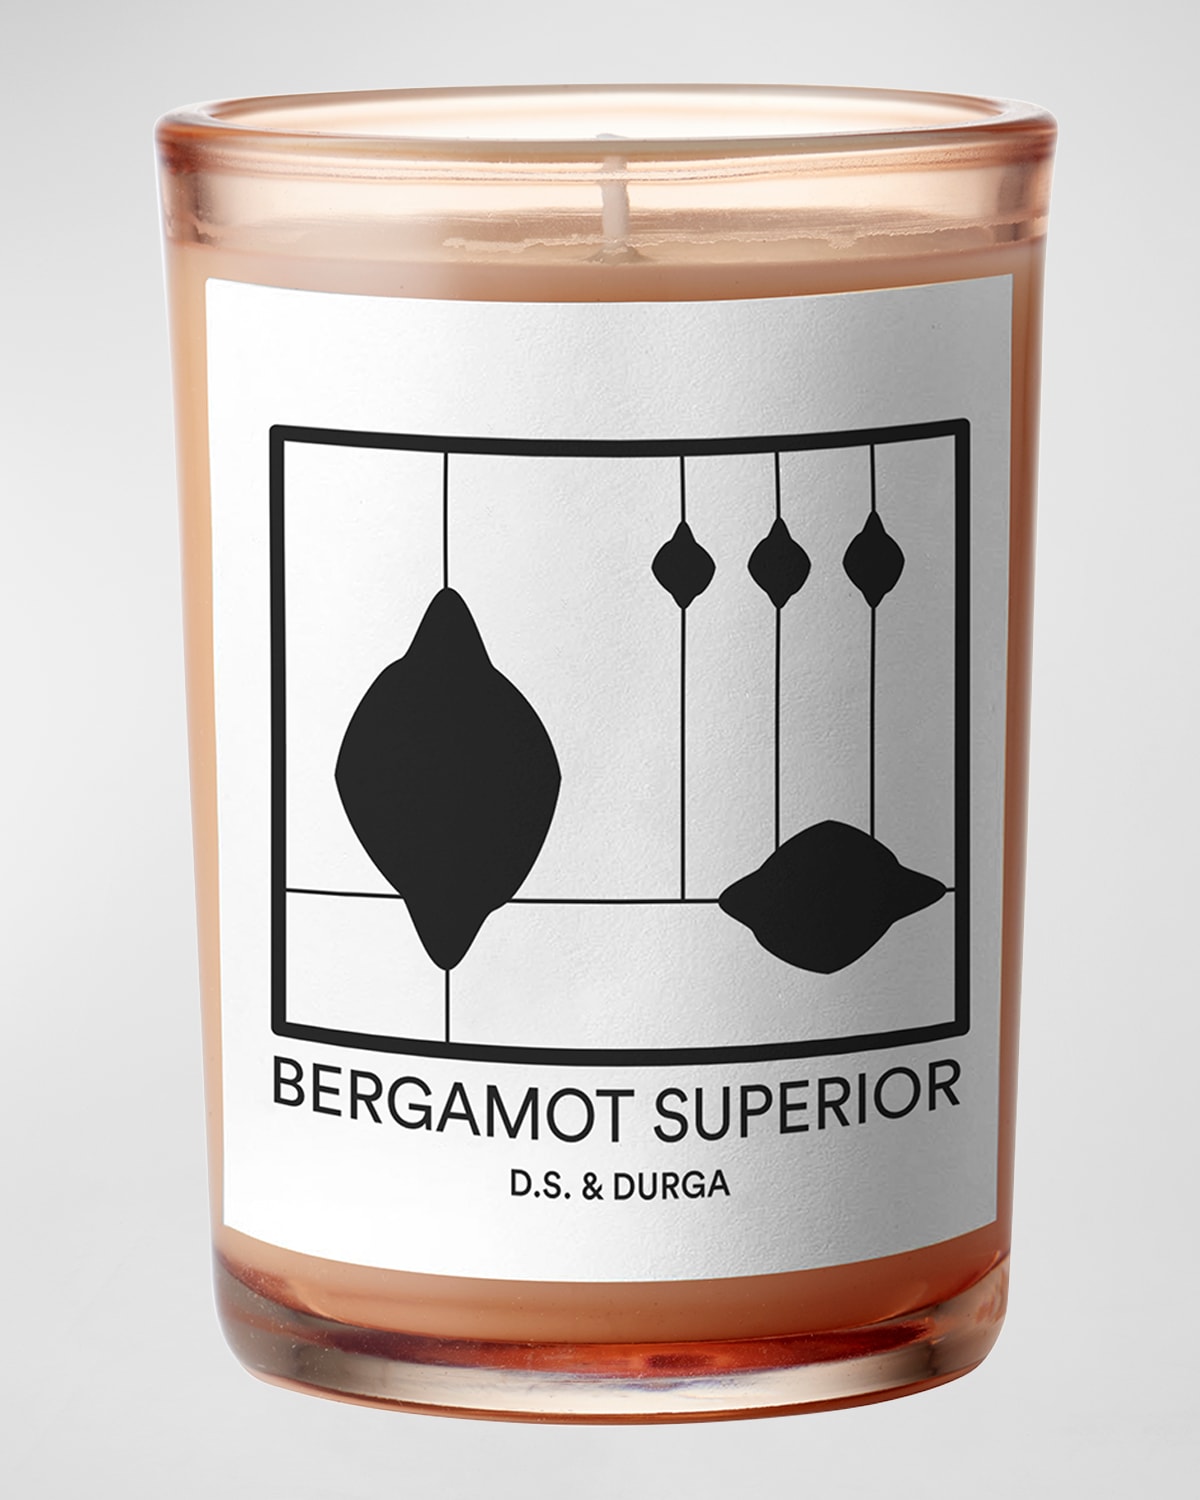 7 oz. Bergamot Superior Candle